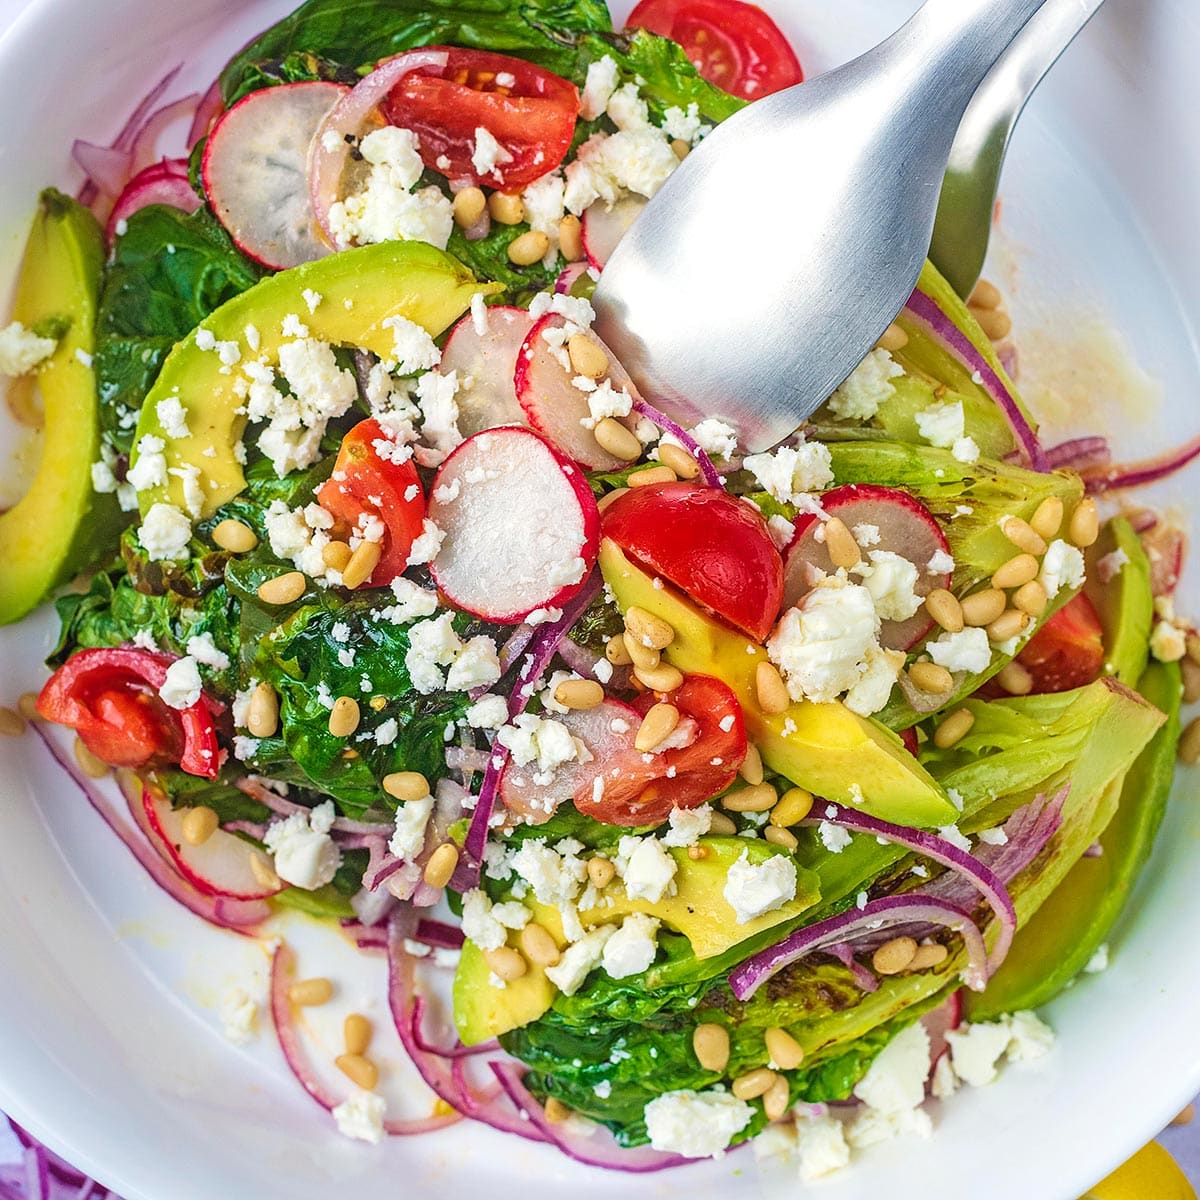 Grilled Little Gem salad - Something New For Dinner